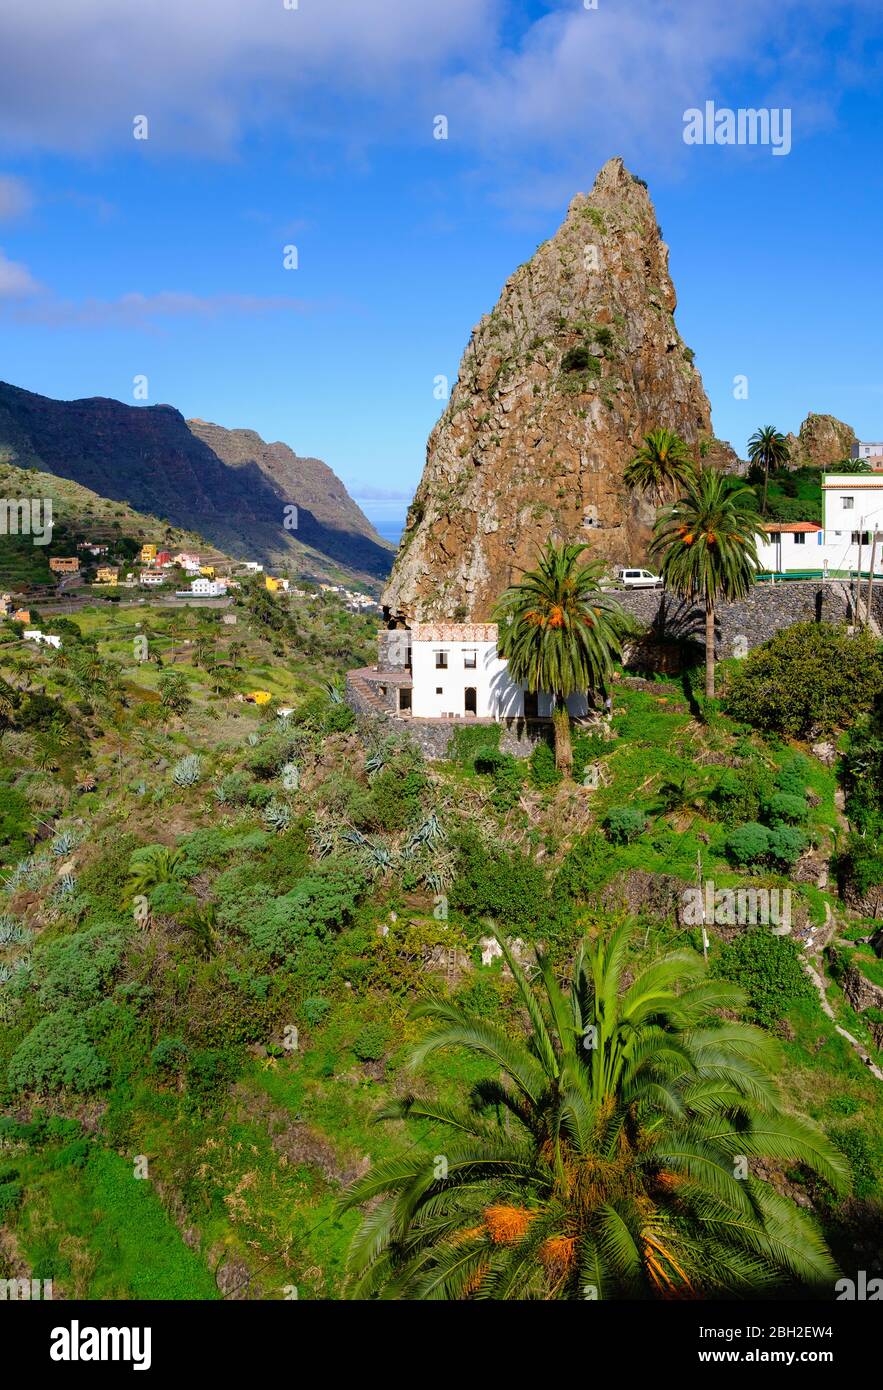 Spain, Province of Santa Cruz de Tenerife, Hermigua, Roque Pedro rock formation Stock Photo